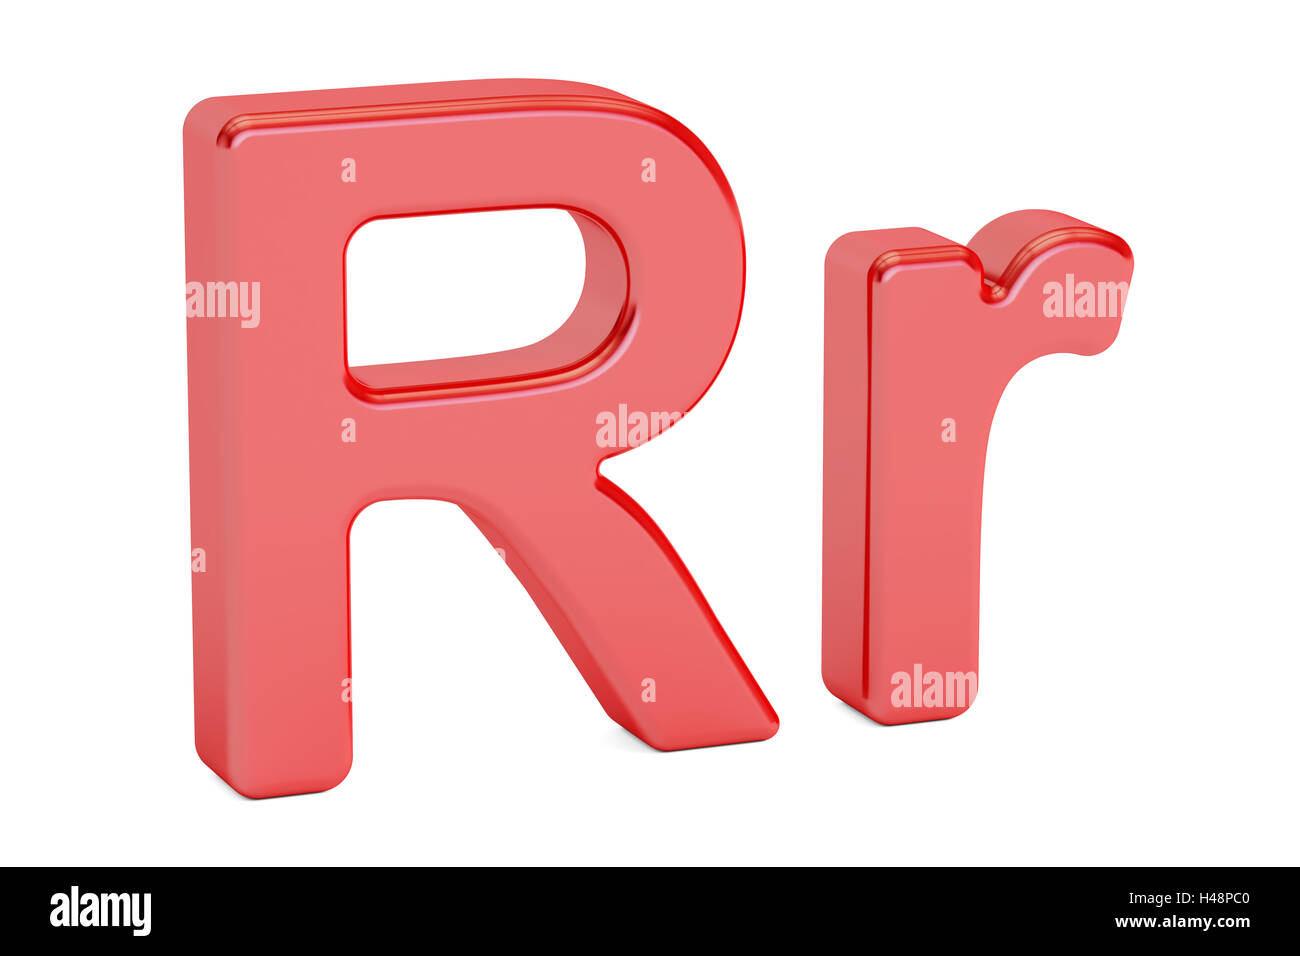 Petits et grands lettre alphabet R rouge, rendu 3D isolé sur fond blanc Banque D'Images